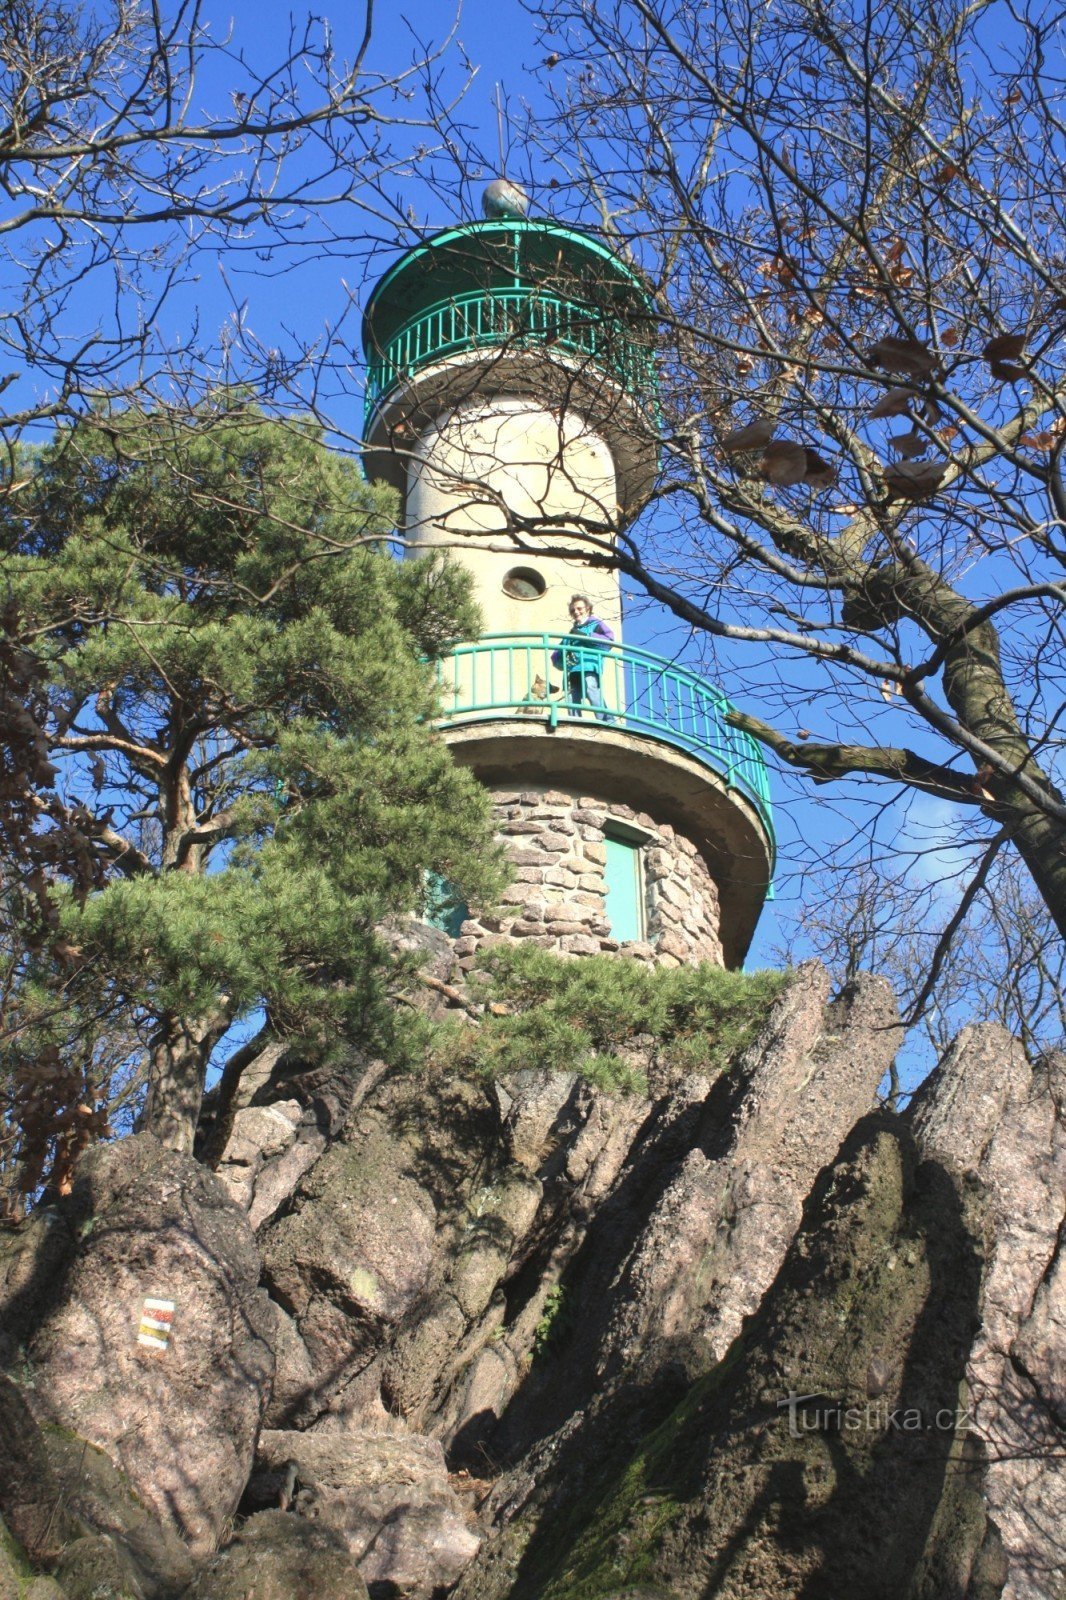 Tháp quan sát nằm trên một sườn núi đá